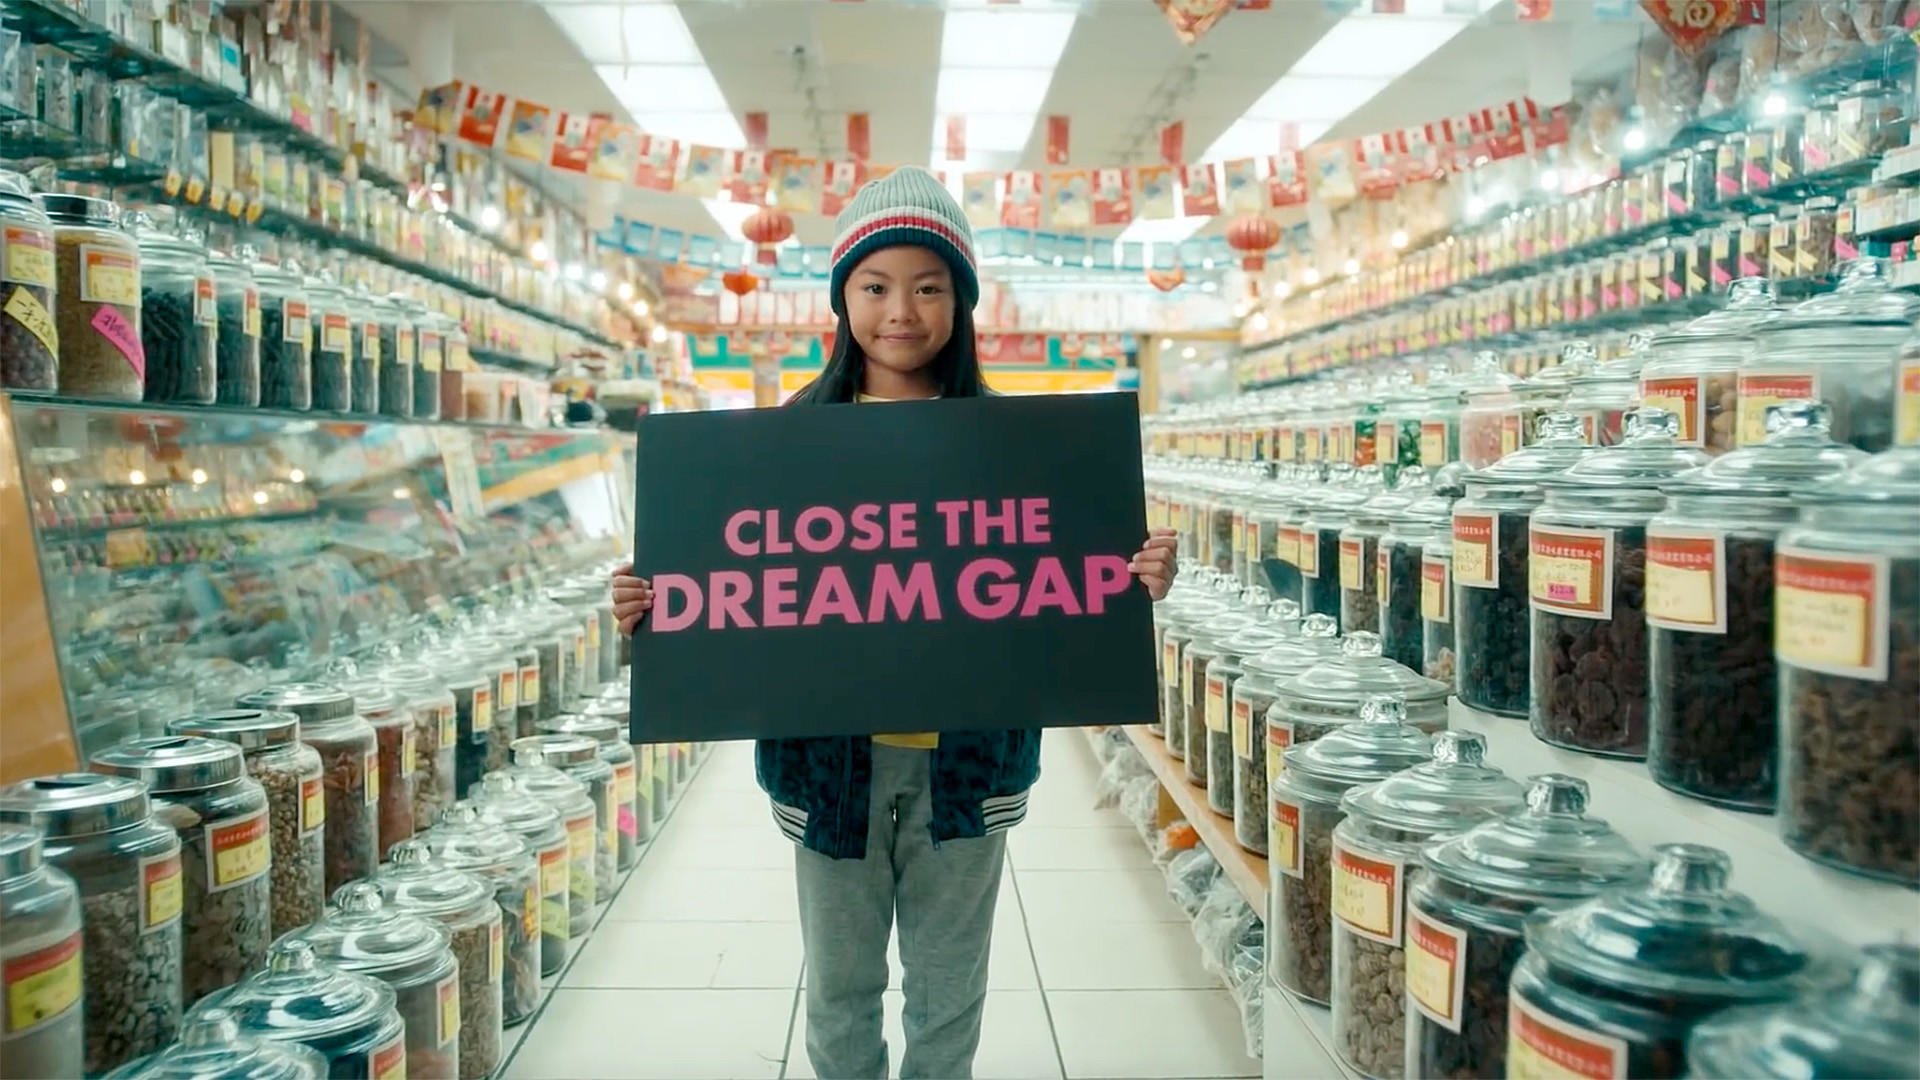 کمپین Dream Gap شرکت باربی و ویدئوی تأثیرگذاری که منتشر کرده است